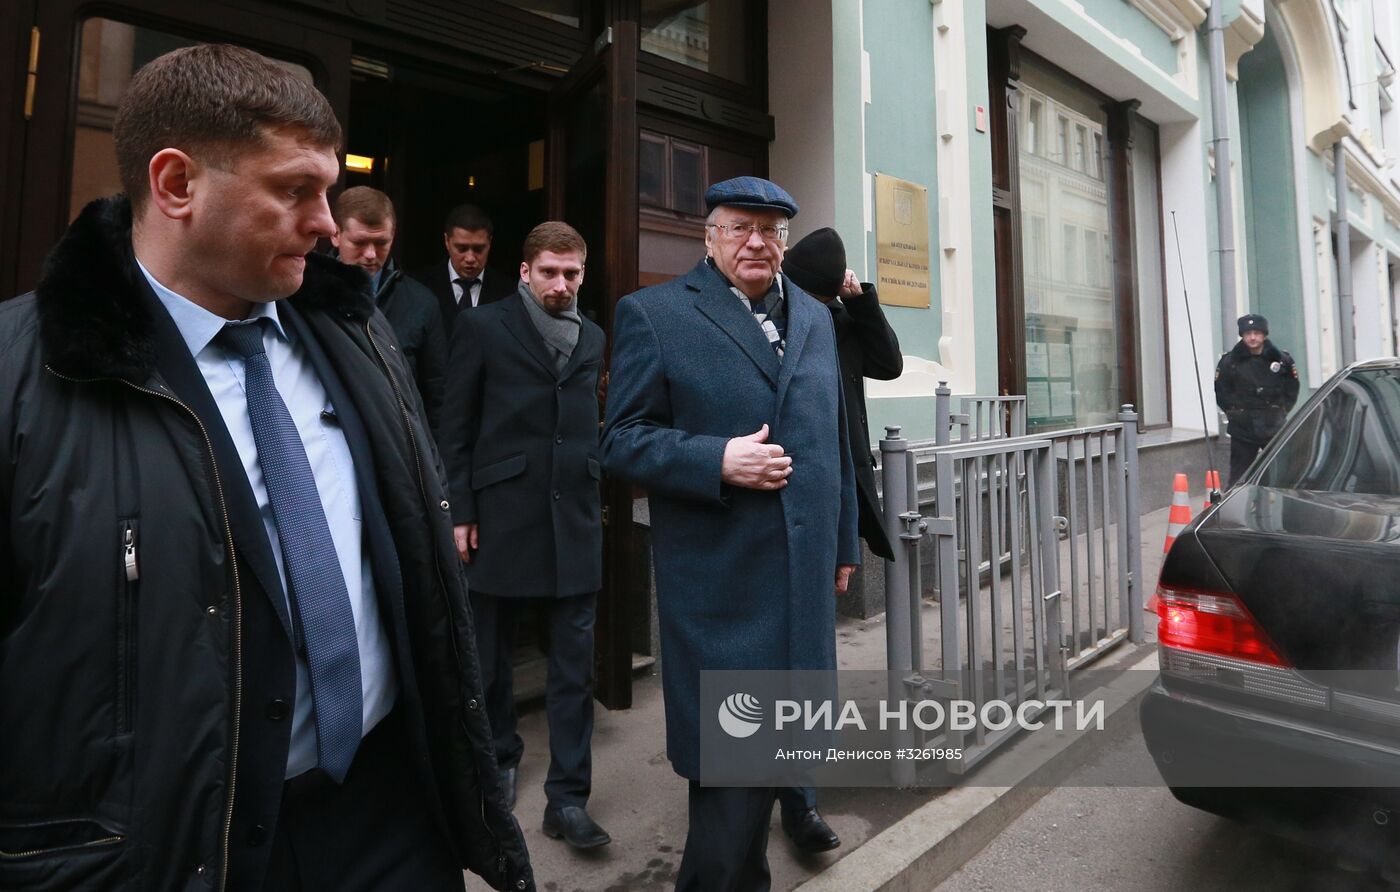 В. Жириновский подал документы в ЦИК для регистрации его в качестве кандидата на пост президента РФ